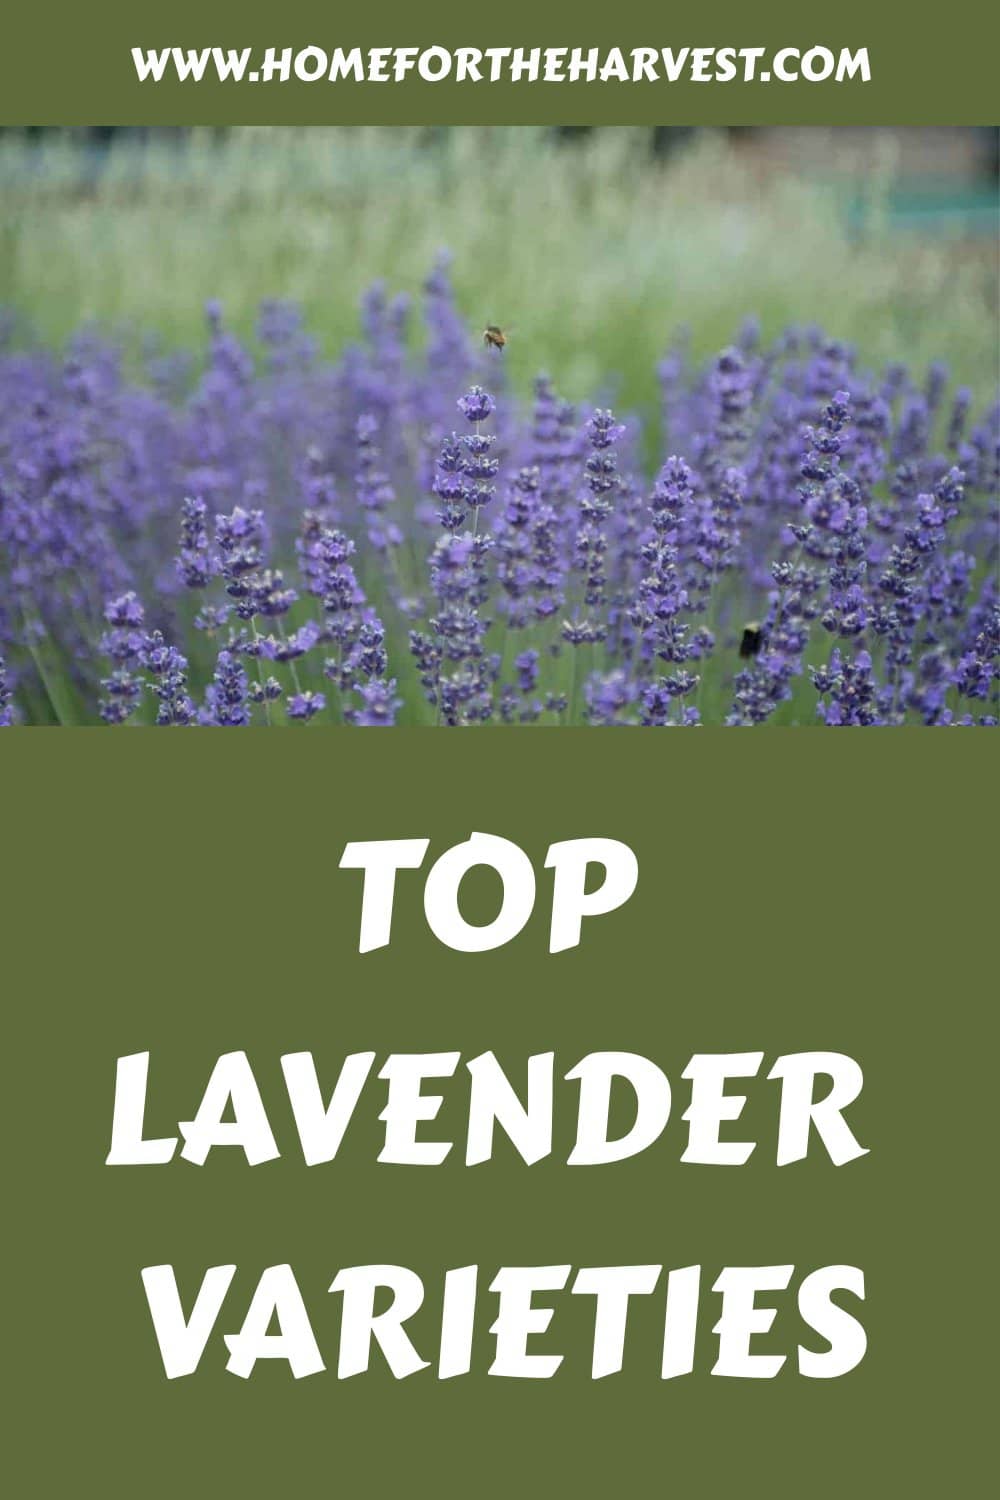 Top lavender varieties generated pin 25726